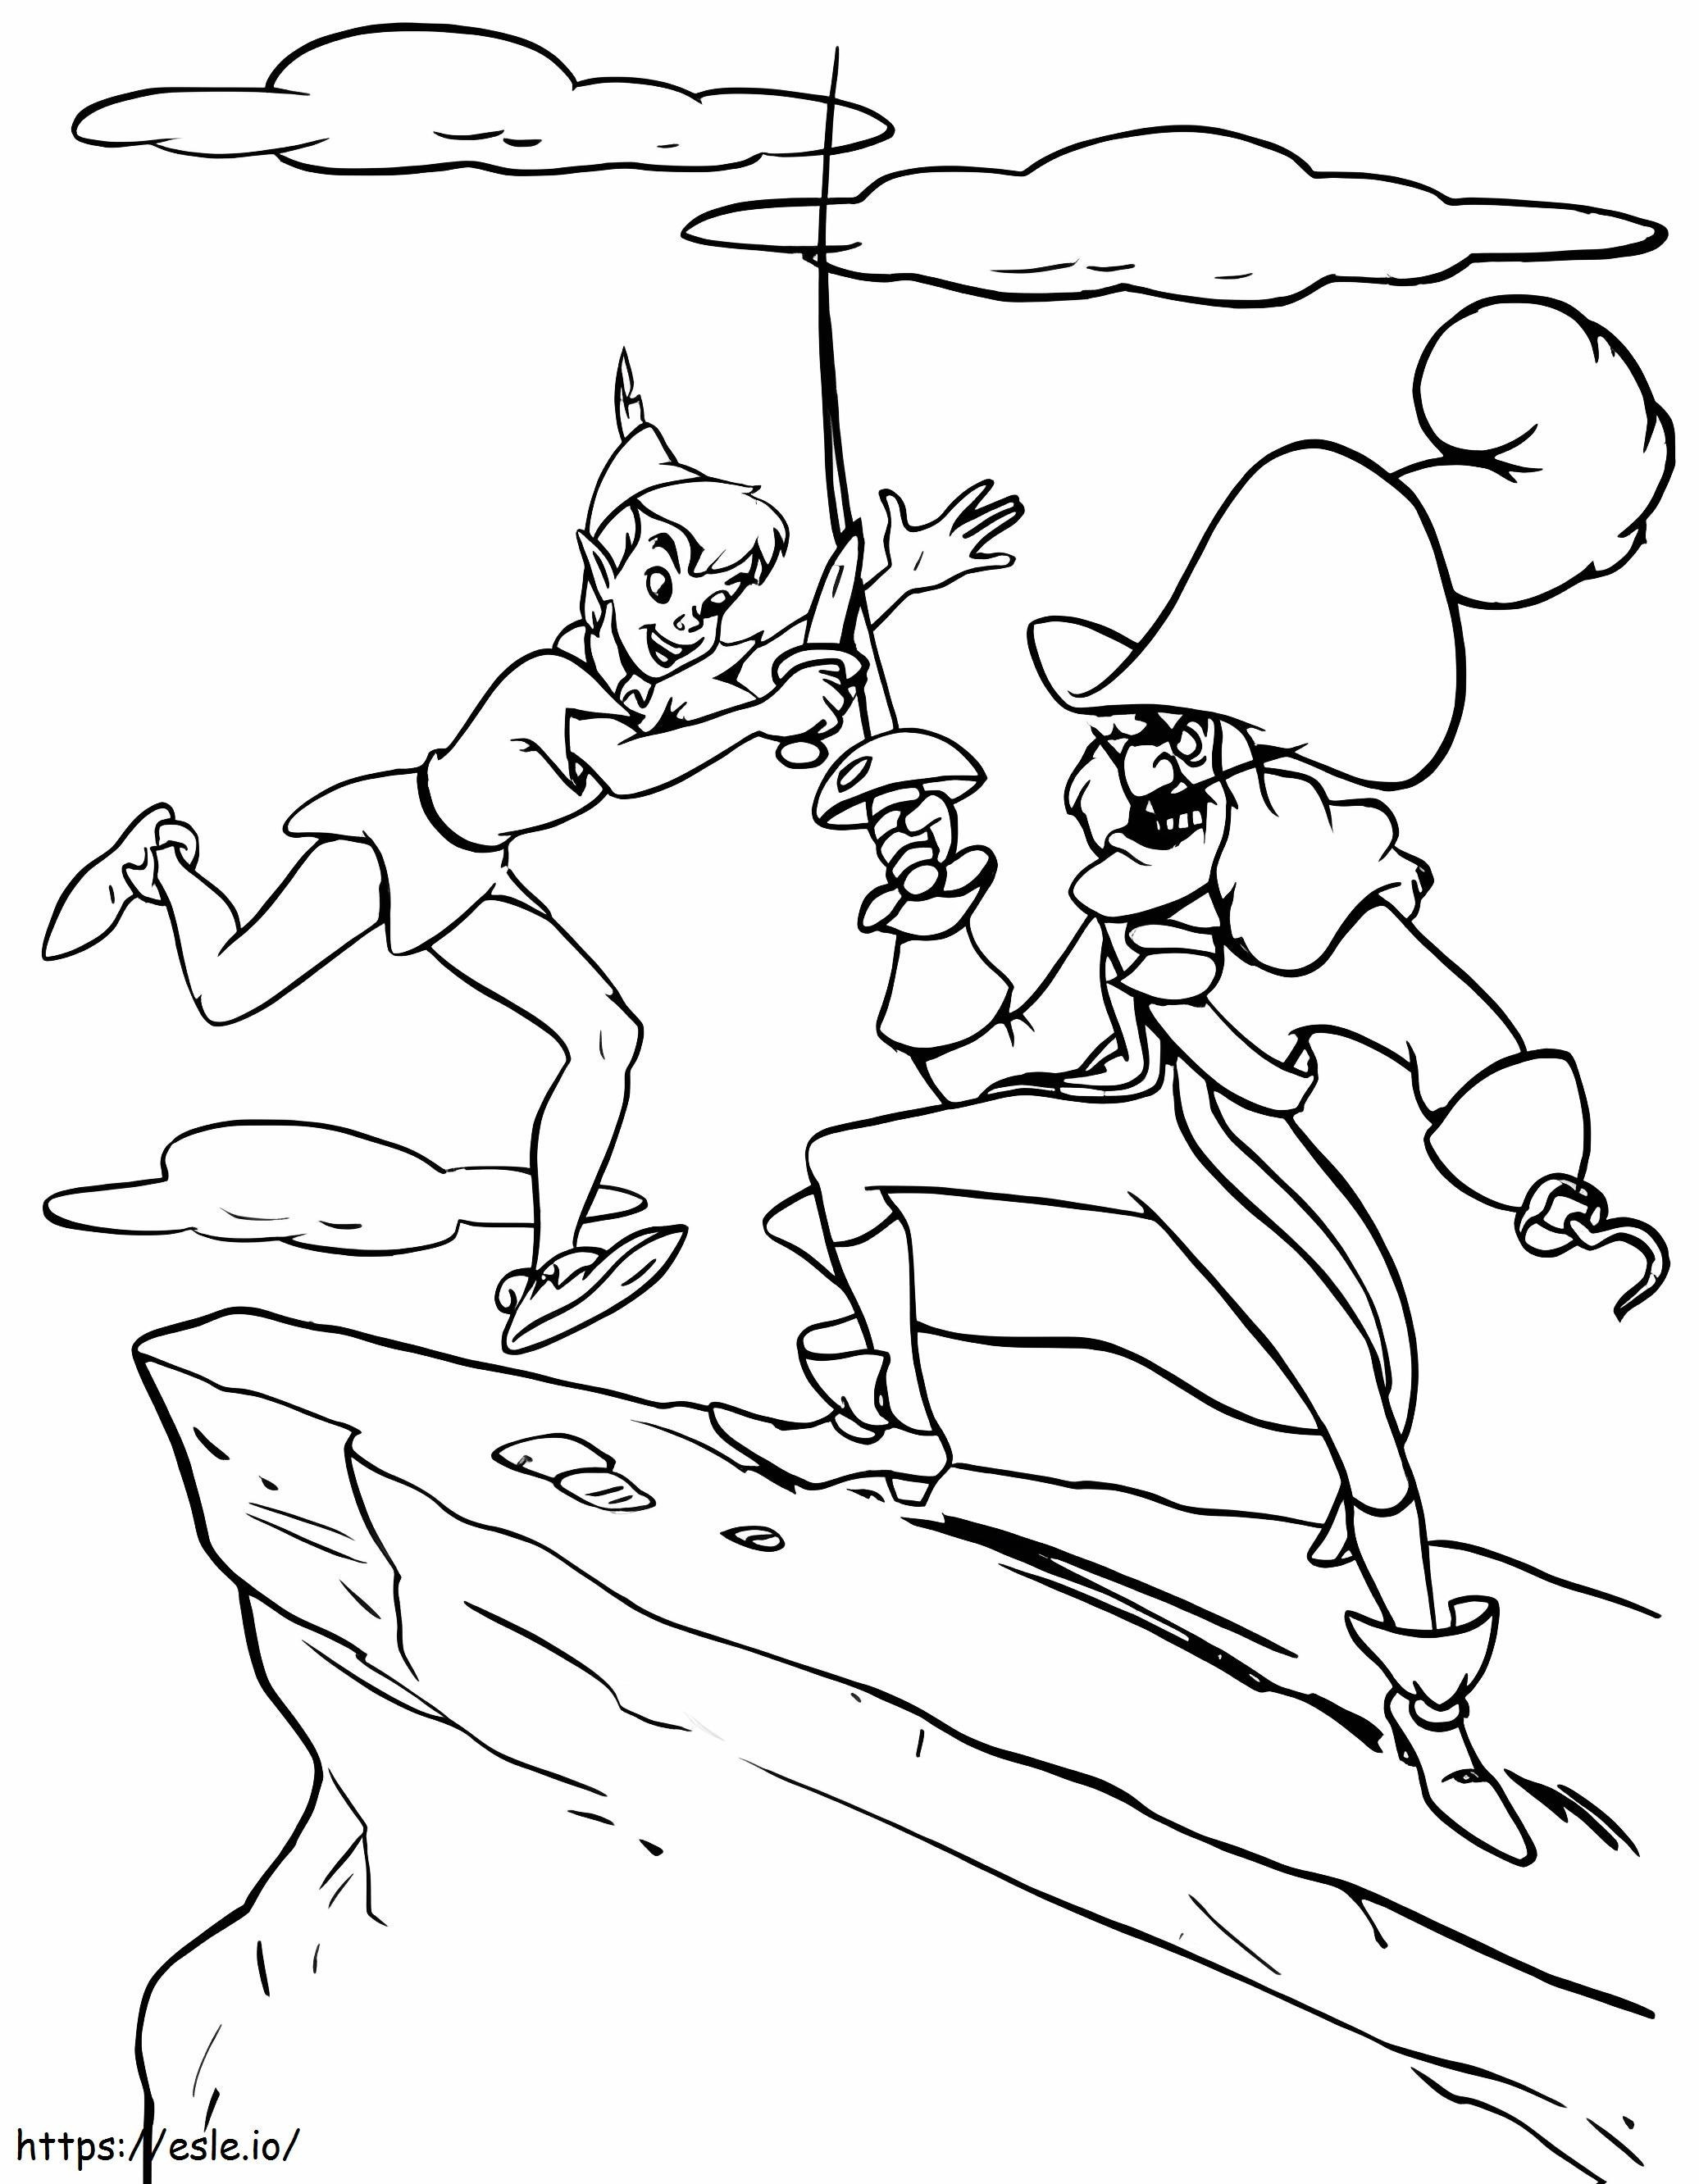 Peter Pan ve Hook'un Dövüşü boyama